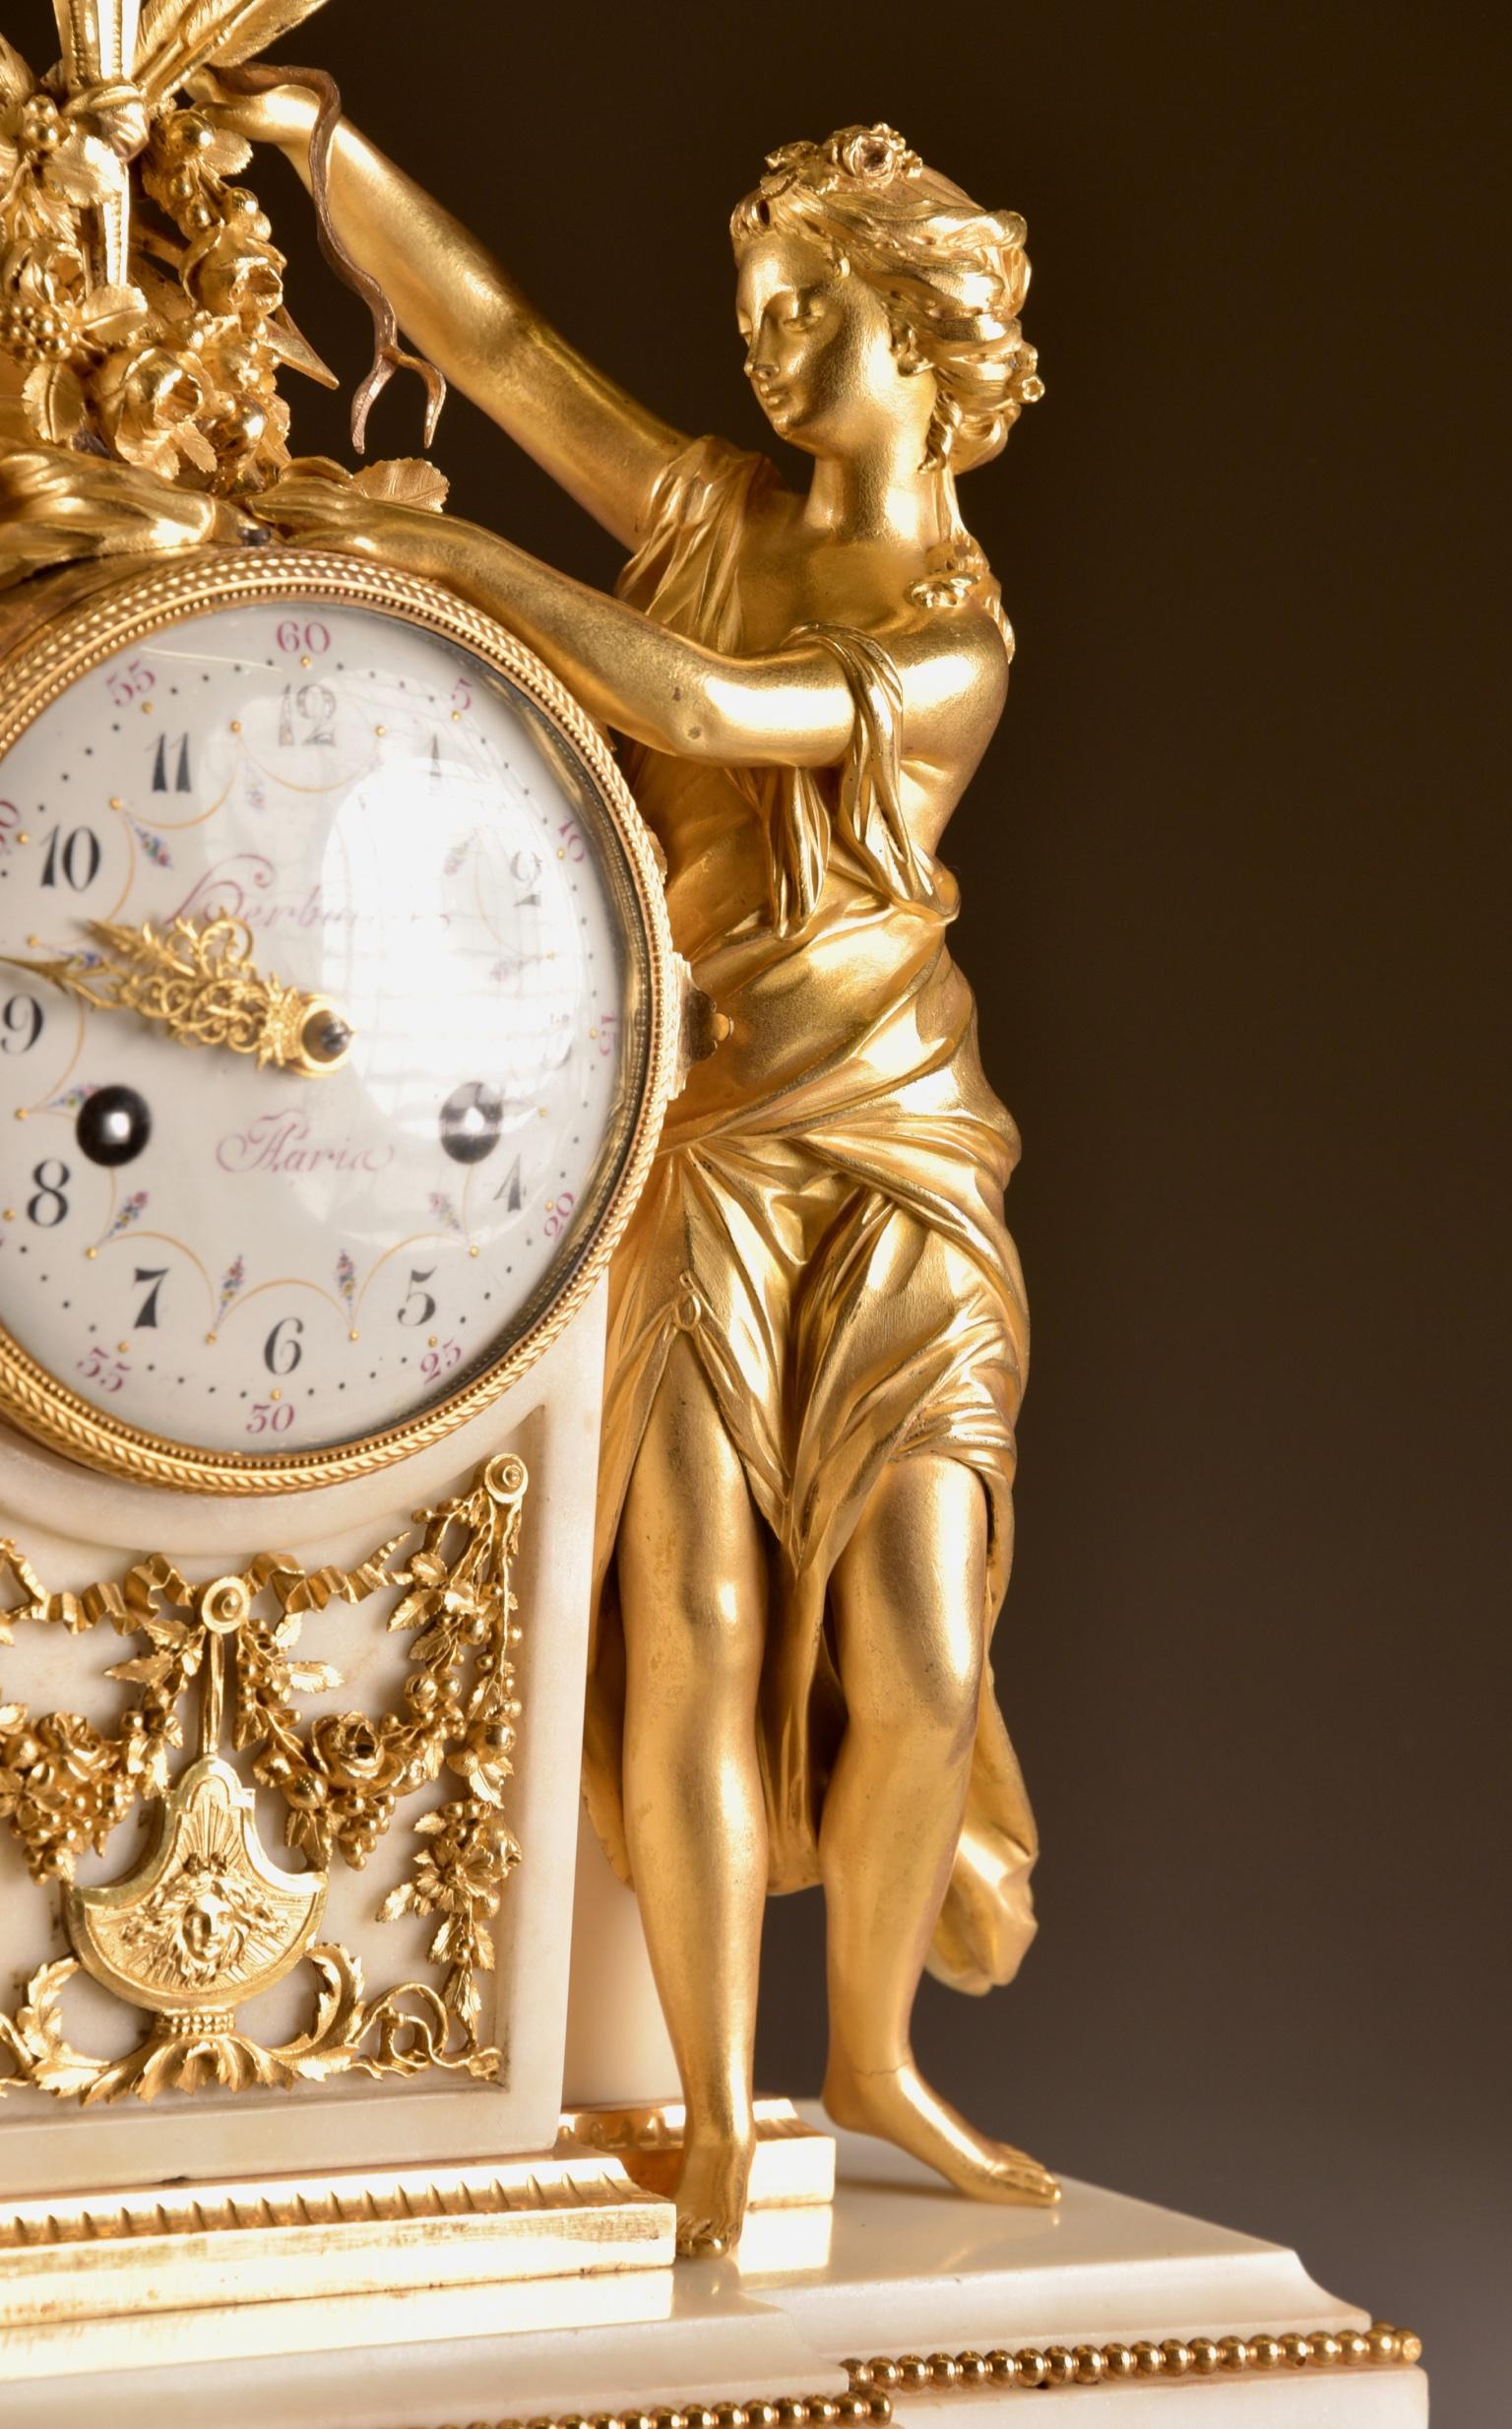 Large Louis XVI clock (1780), Venus and cherub, Amor wird seiner Waffen beraubt 5